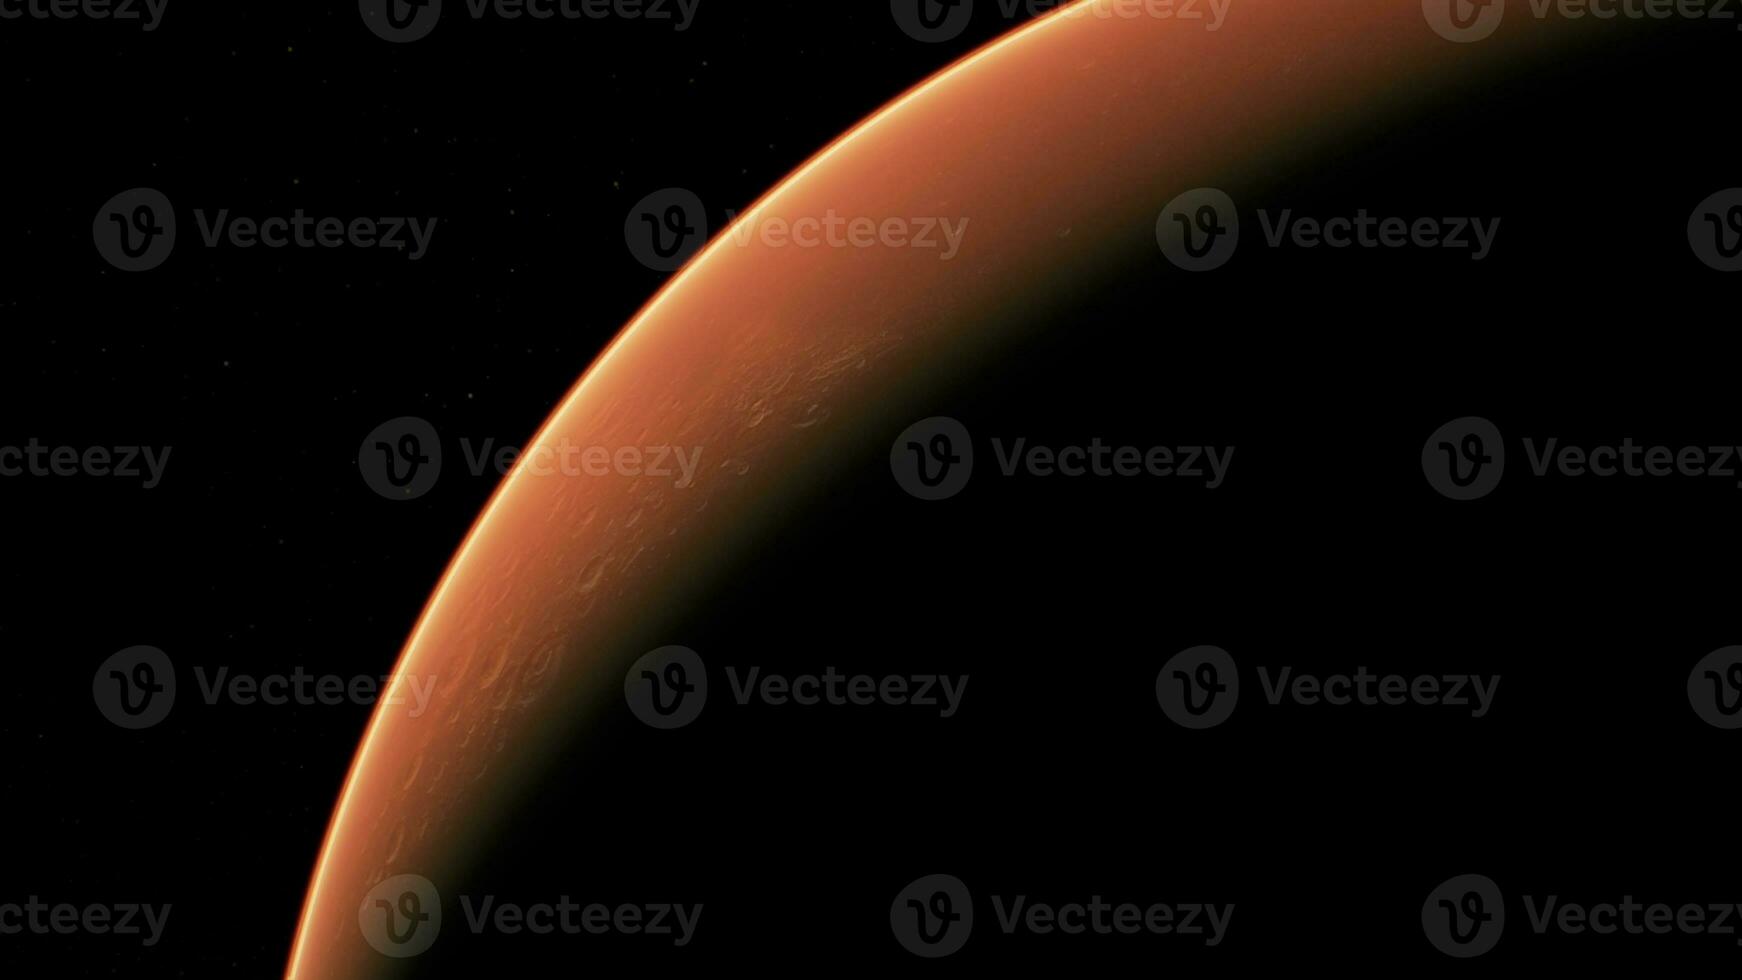 Fantastisk röd planet fördärvar i djup stjärn- Plats foto